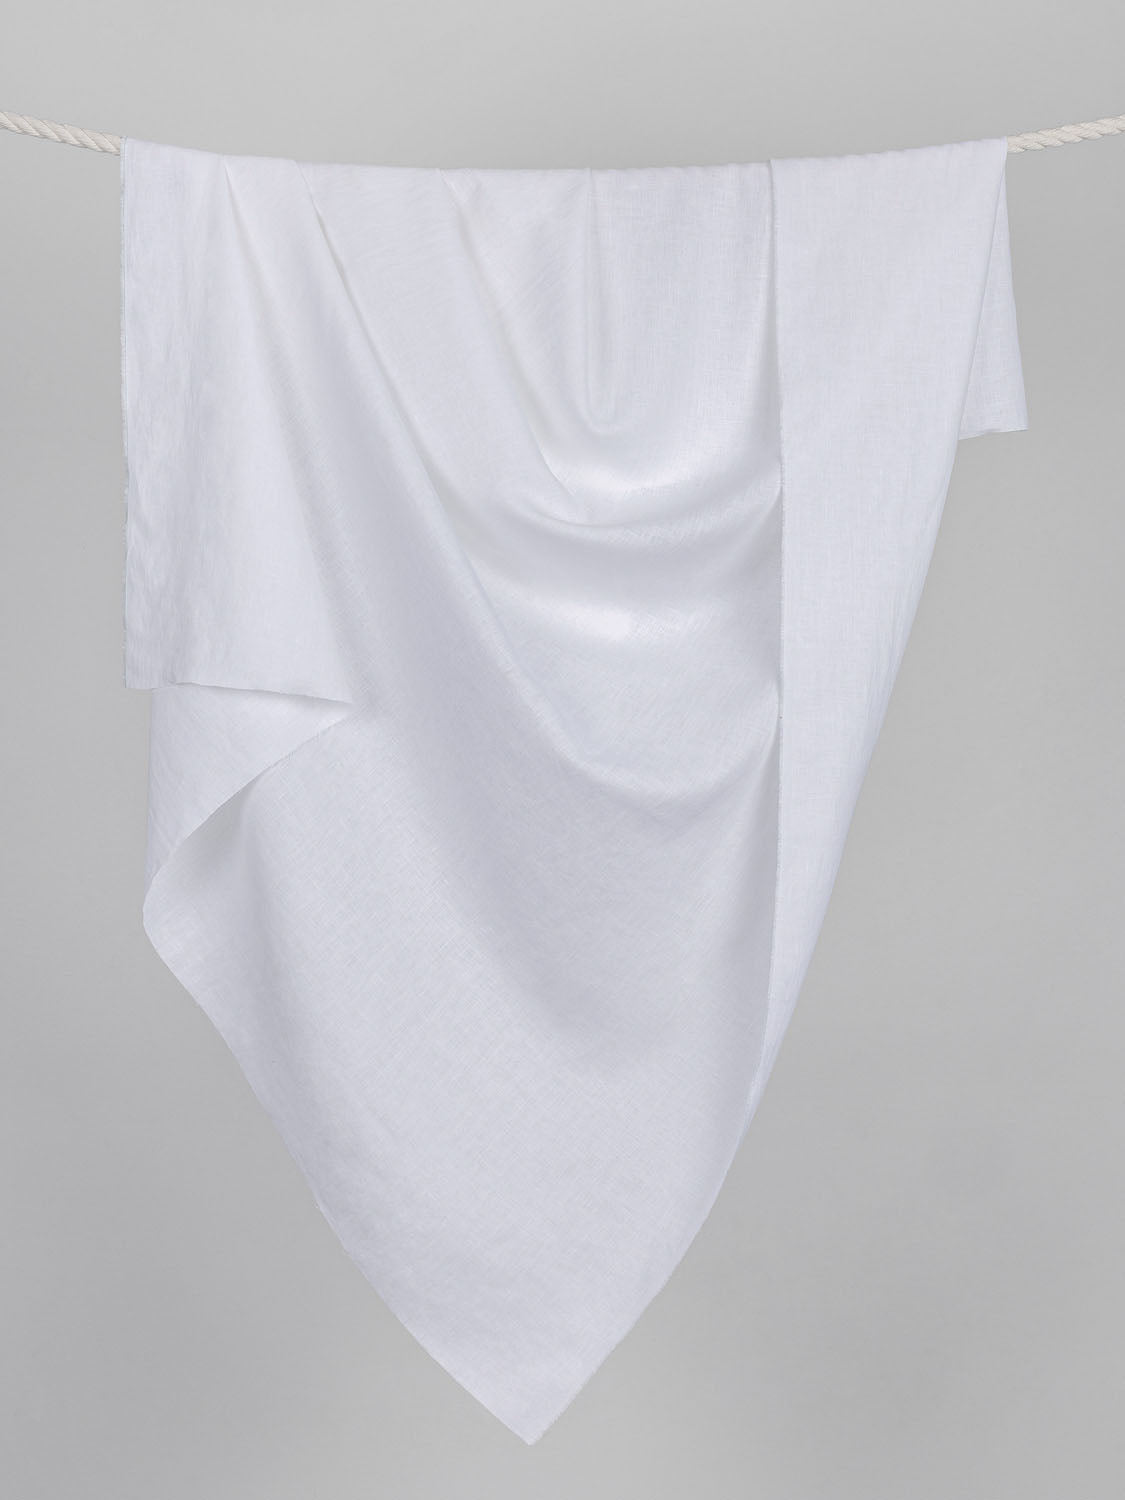 Midweight Linen - White | Core Fabrics